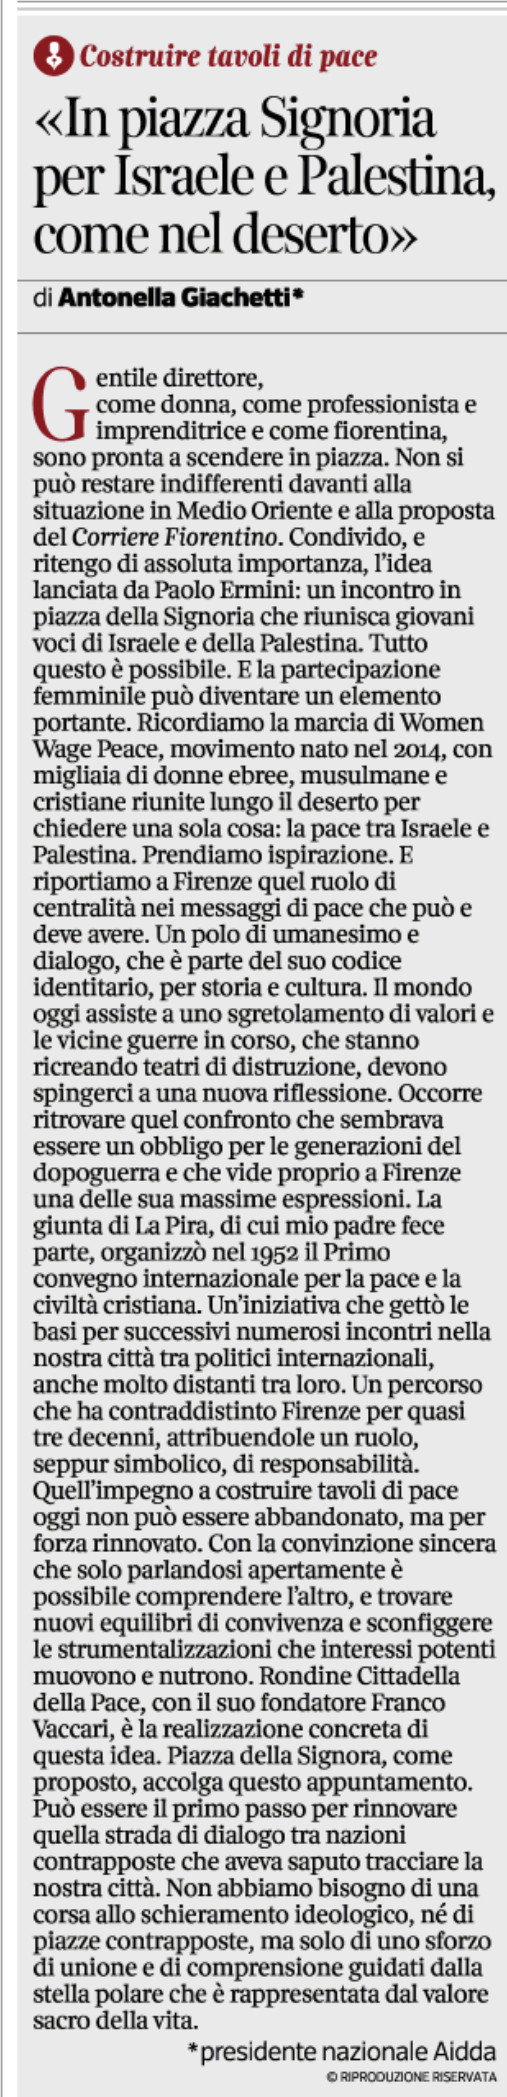 Corriere fiorentino Aidda.jpg